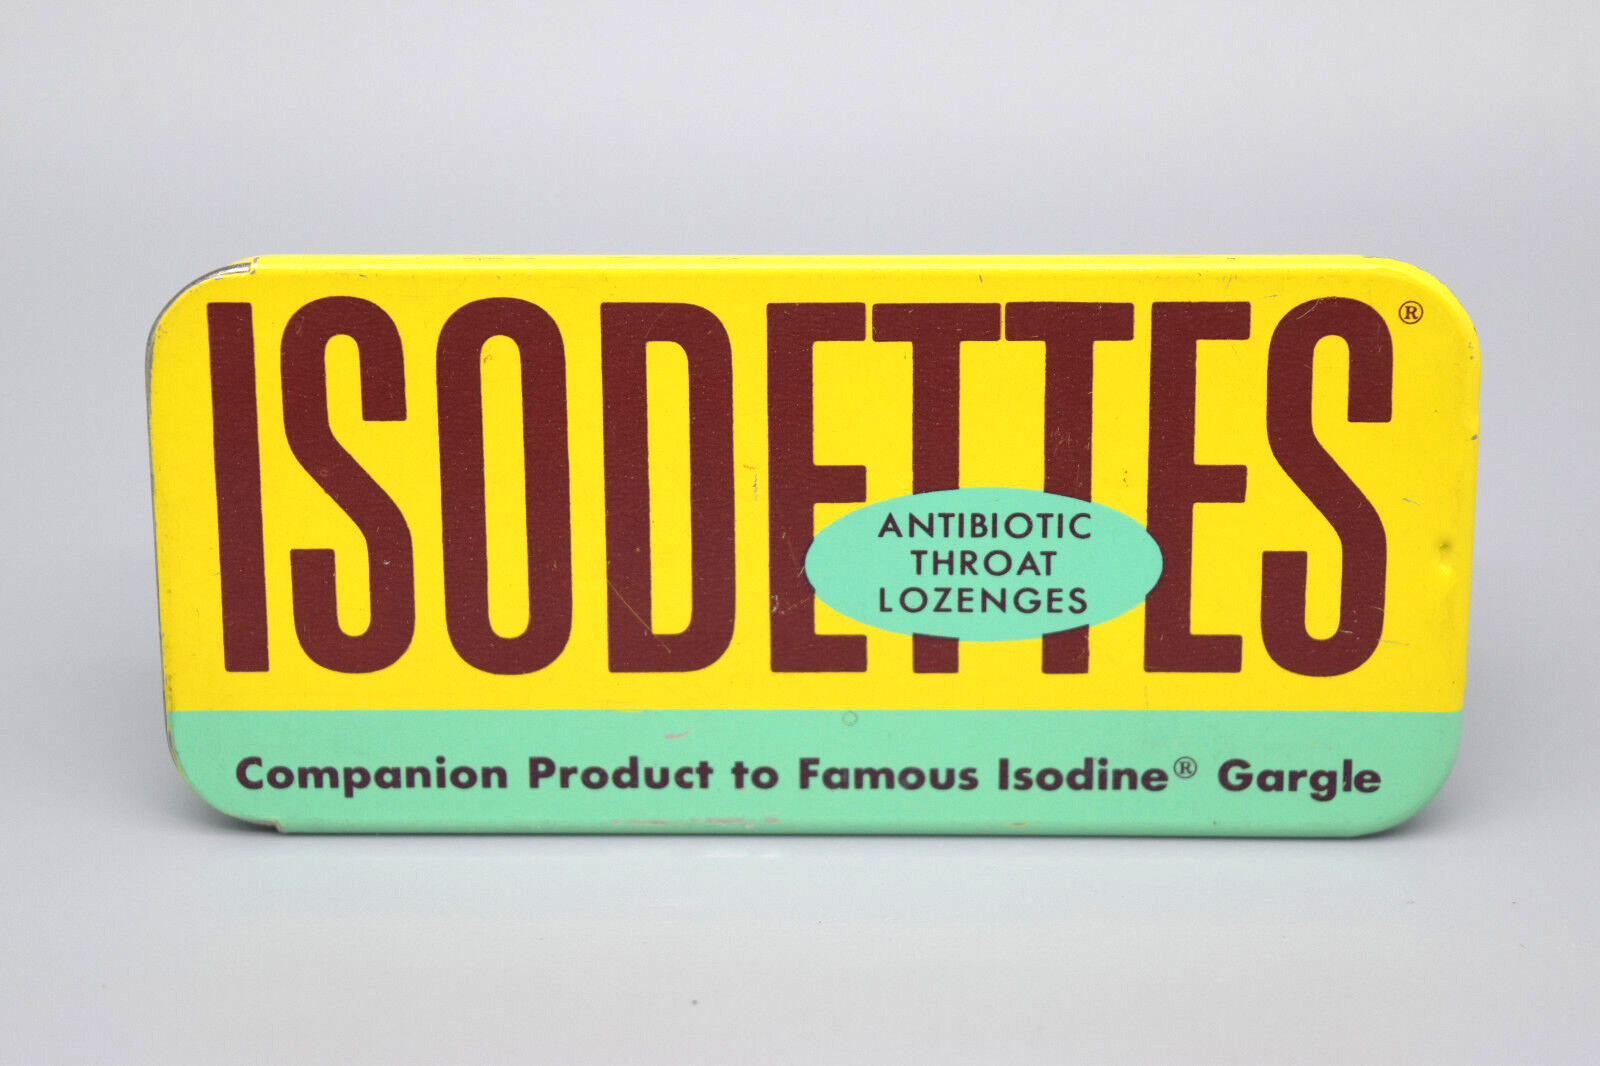 Vintage Isodettes Antibiotic Throat Lozenges Tin Isodine Pharmacal Corp USA 1962